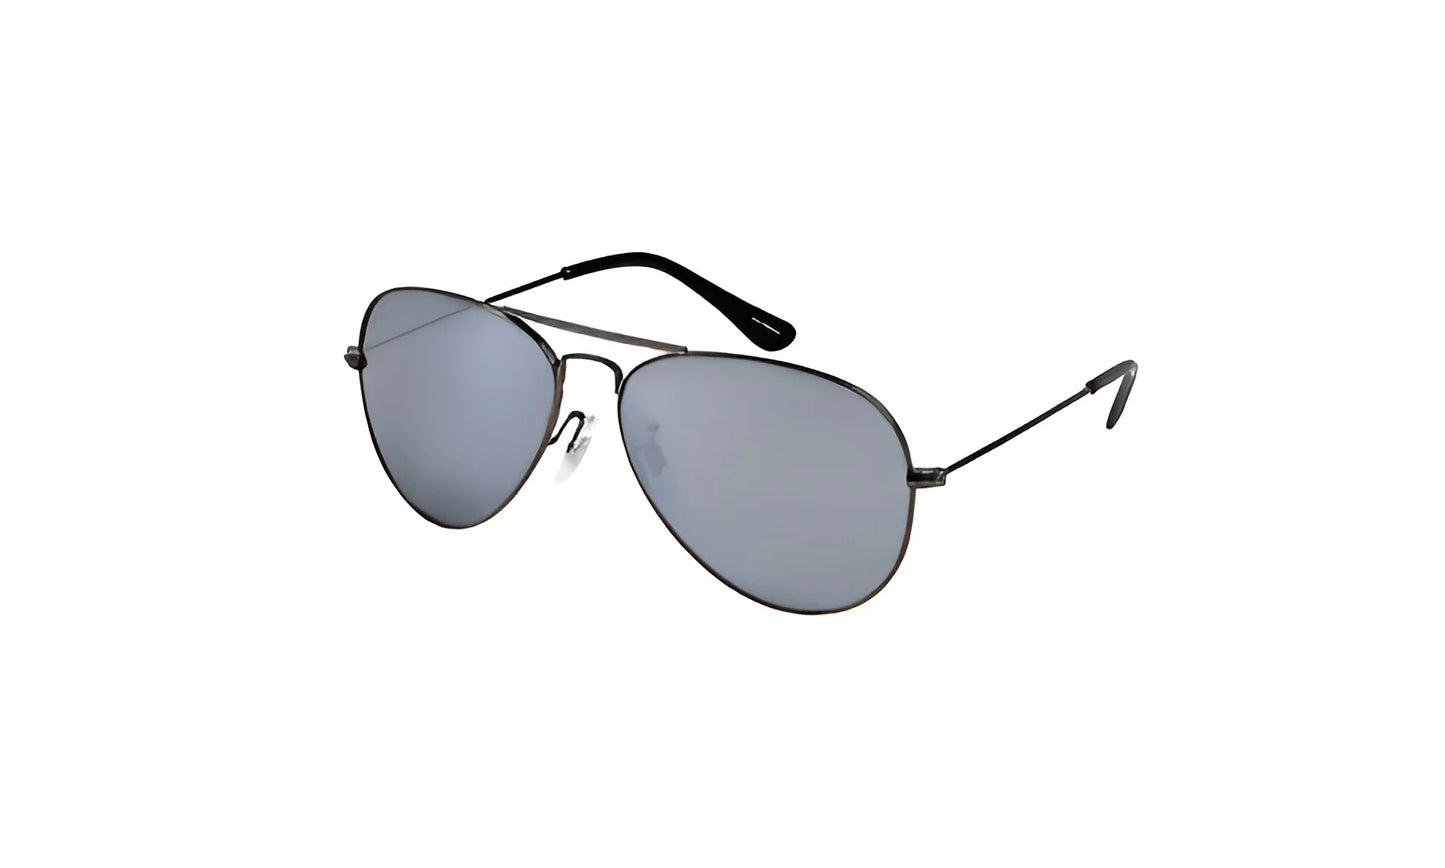 Body Specs RIMZ-2 Sunglasses